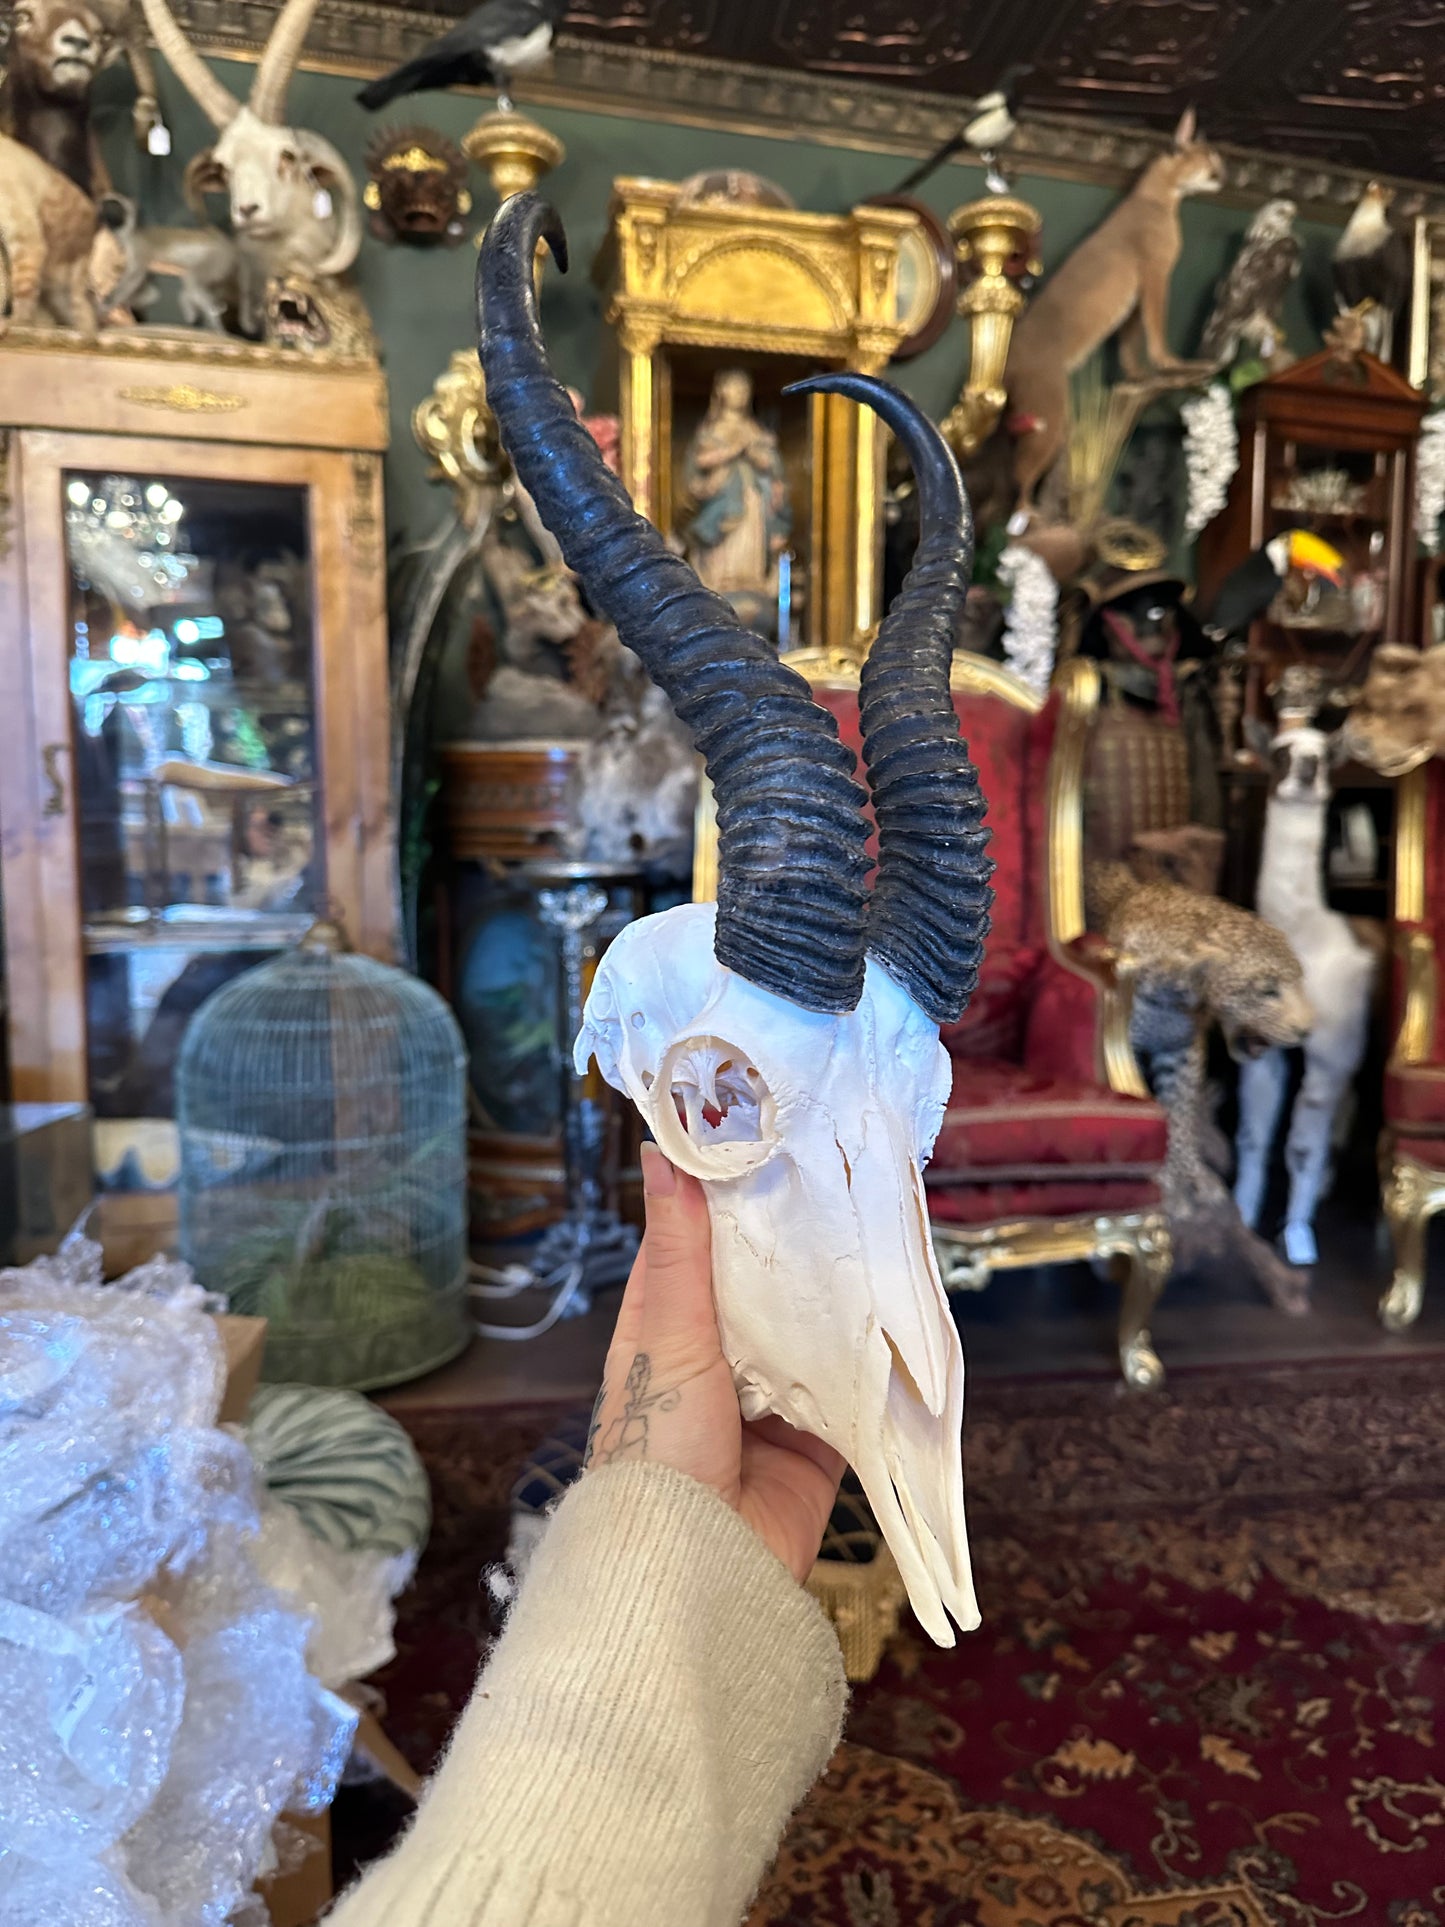 Springbok skull #1